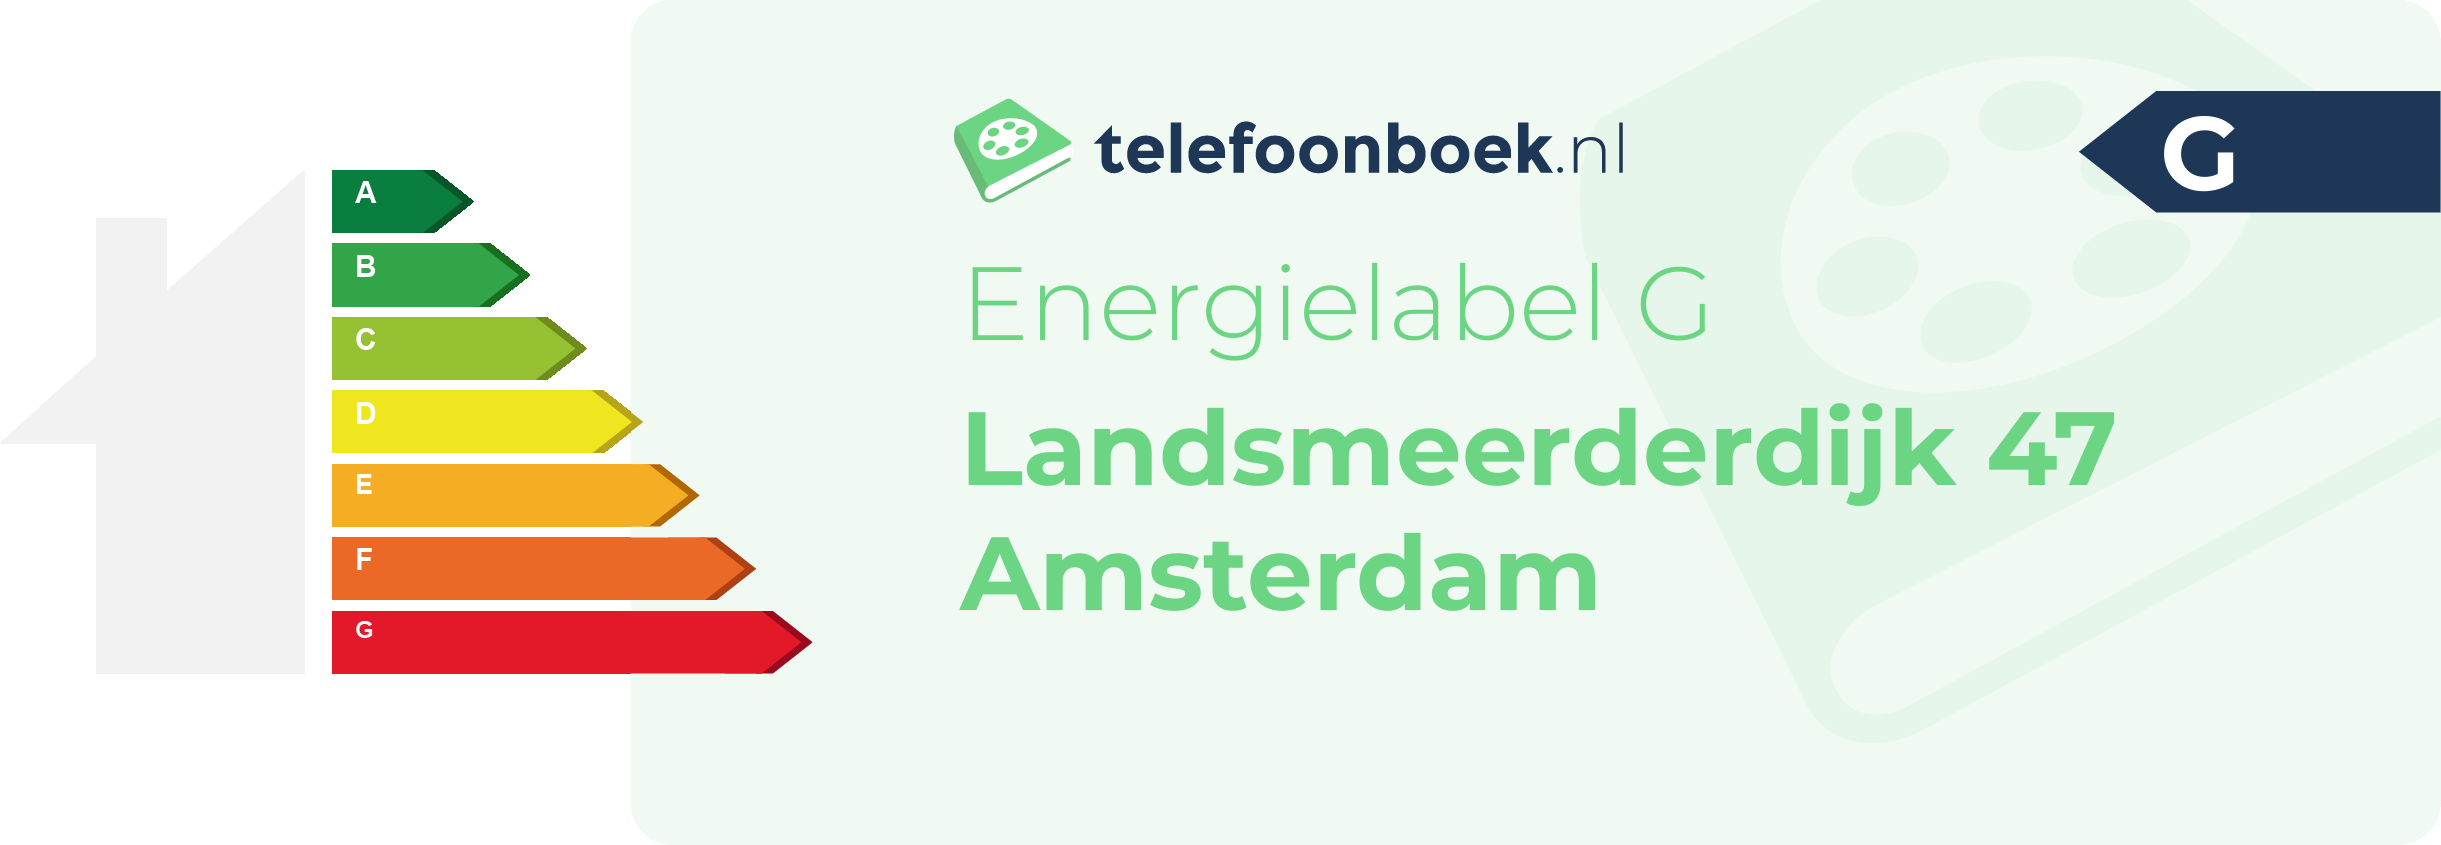 Energielabel Landsmeerderdijk 47 Amsterdam